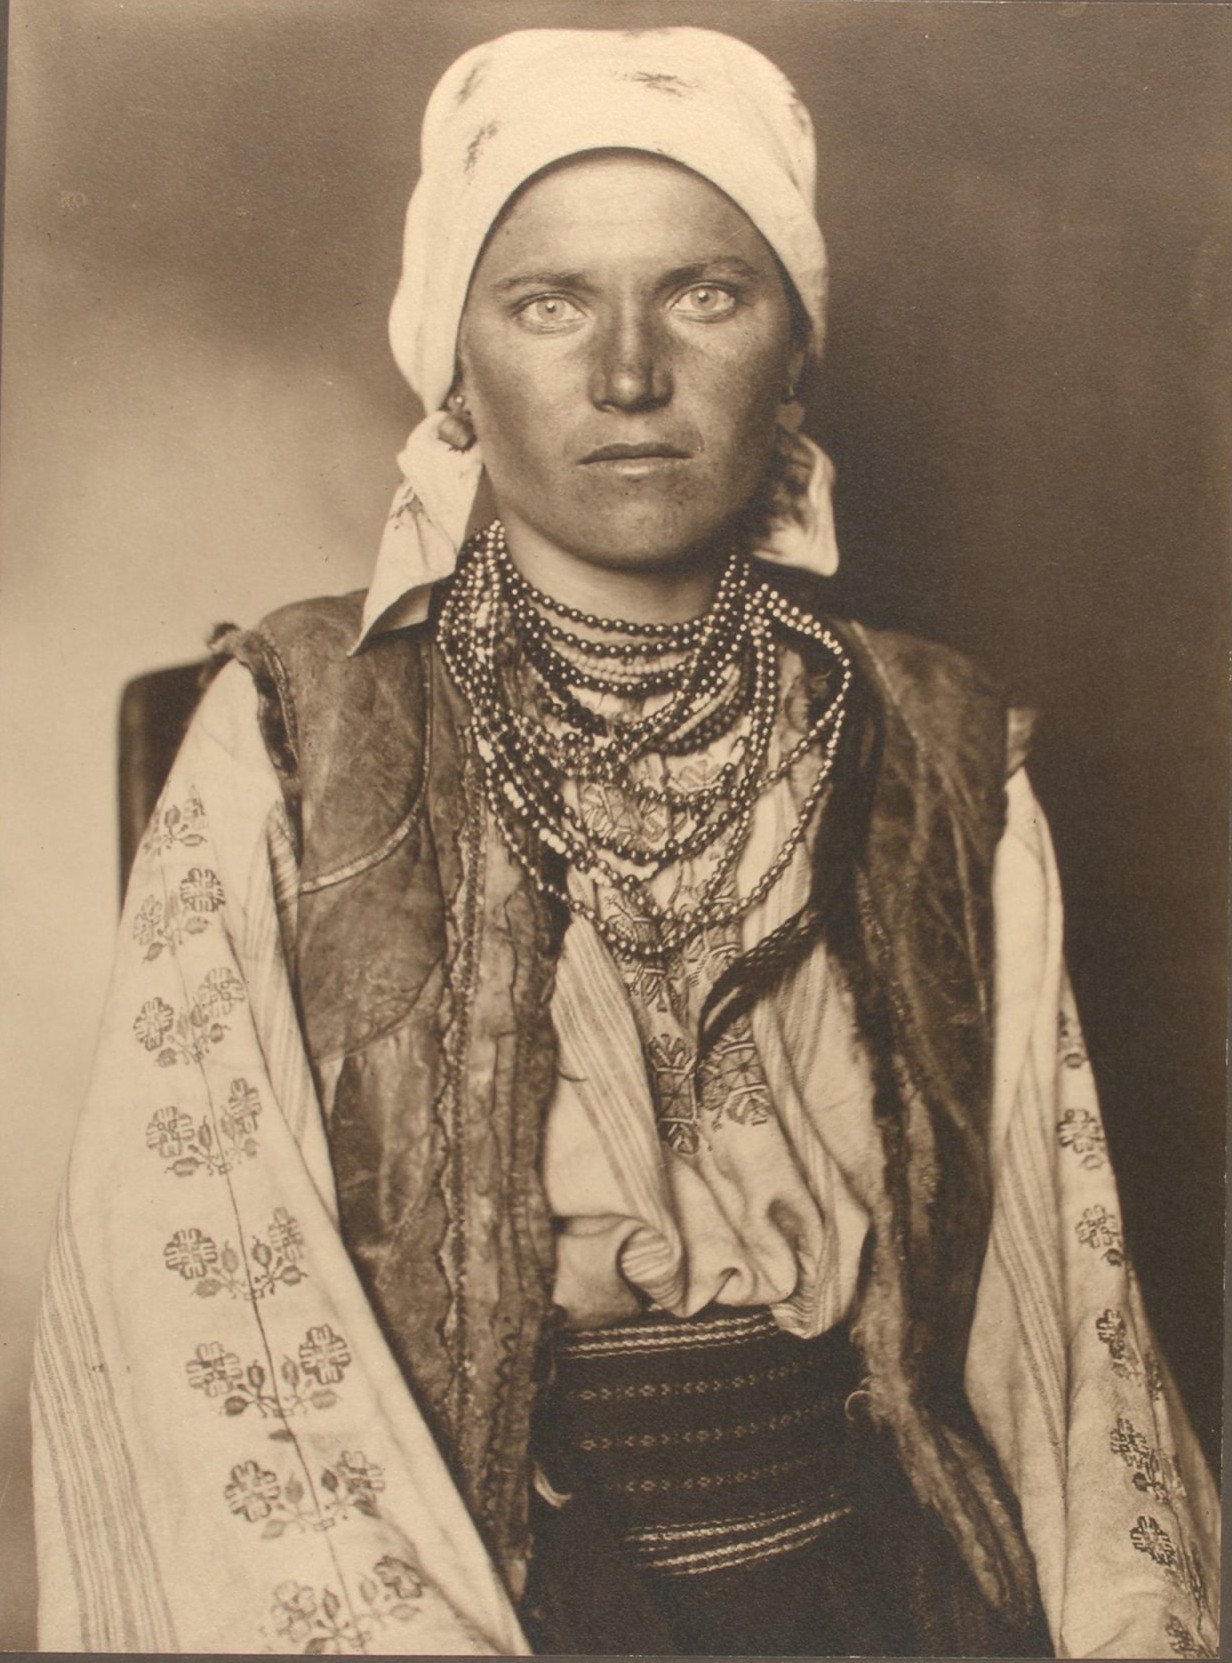 Портрет эммигрантки (предположительно украинки) на острове Эллис, Нью-Йорк, 1906. Фотограф Август Ф. Шерман